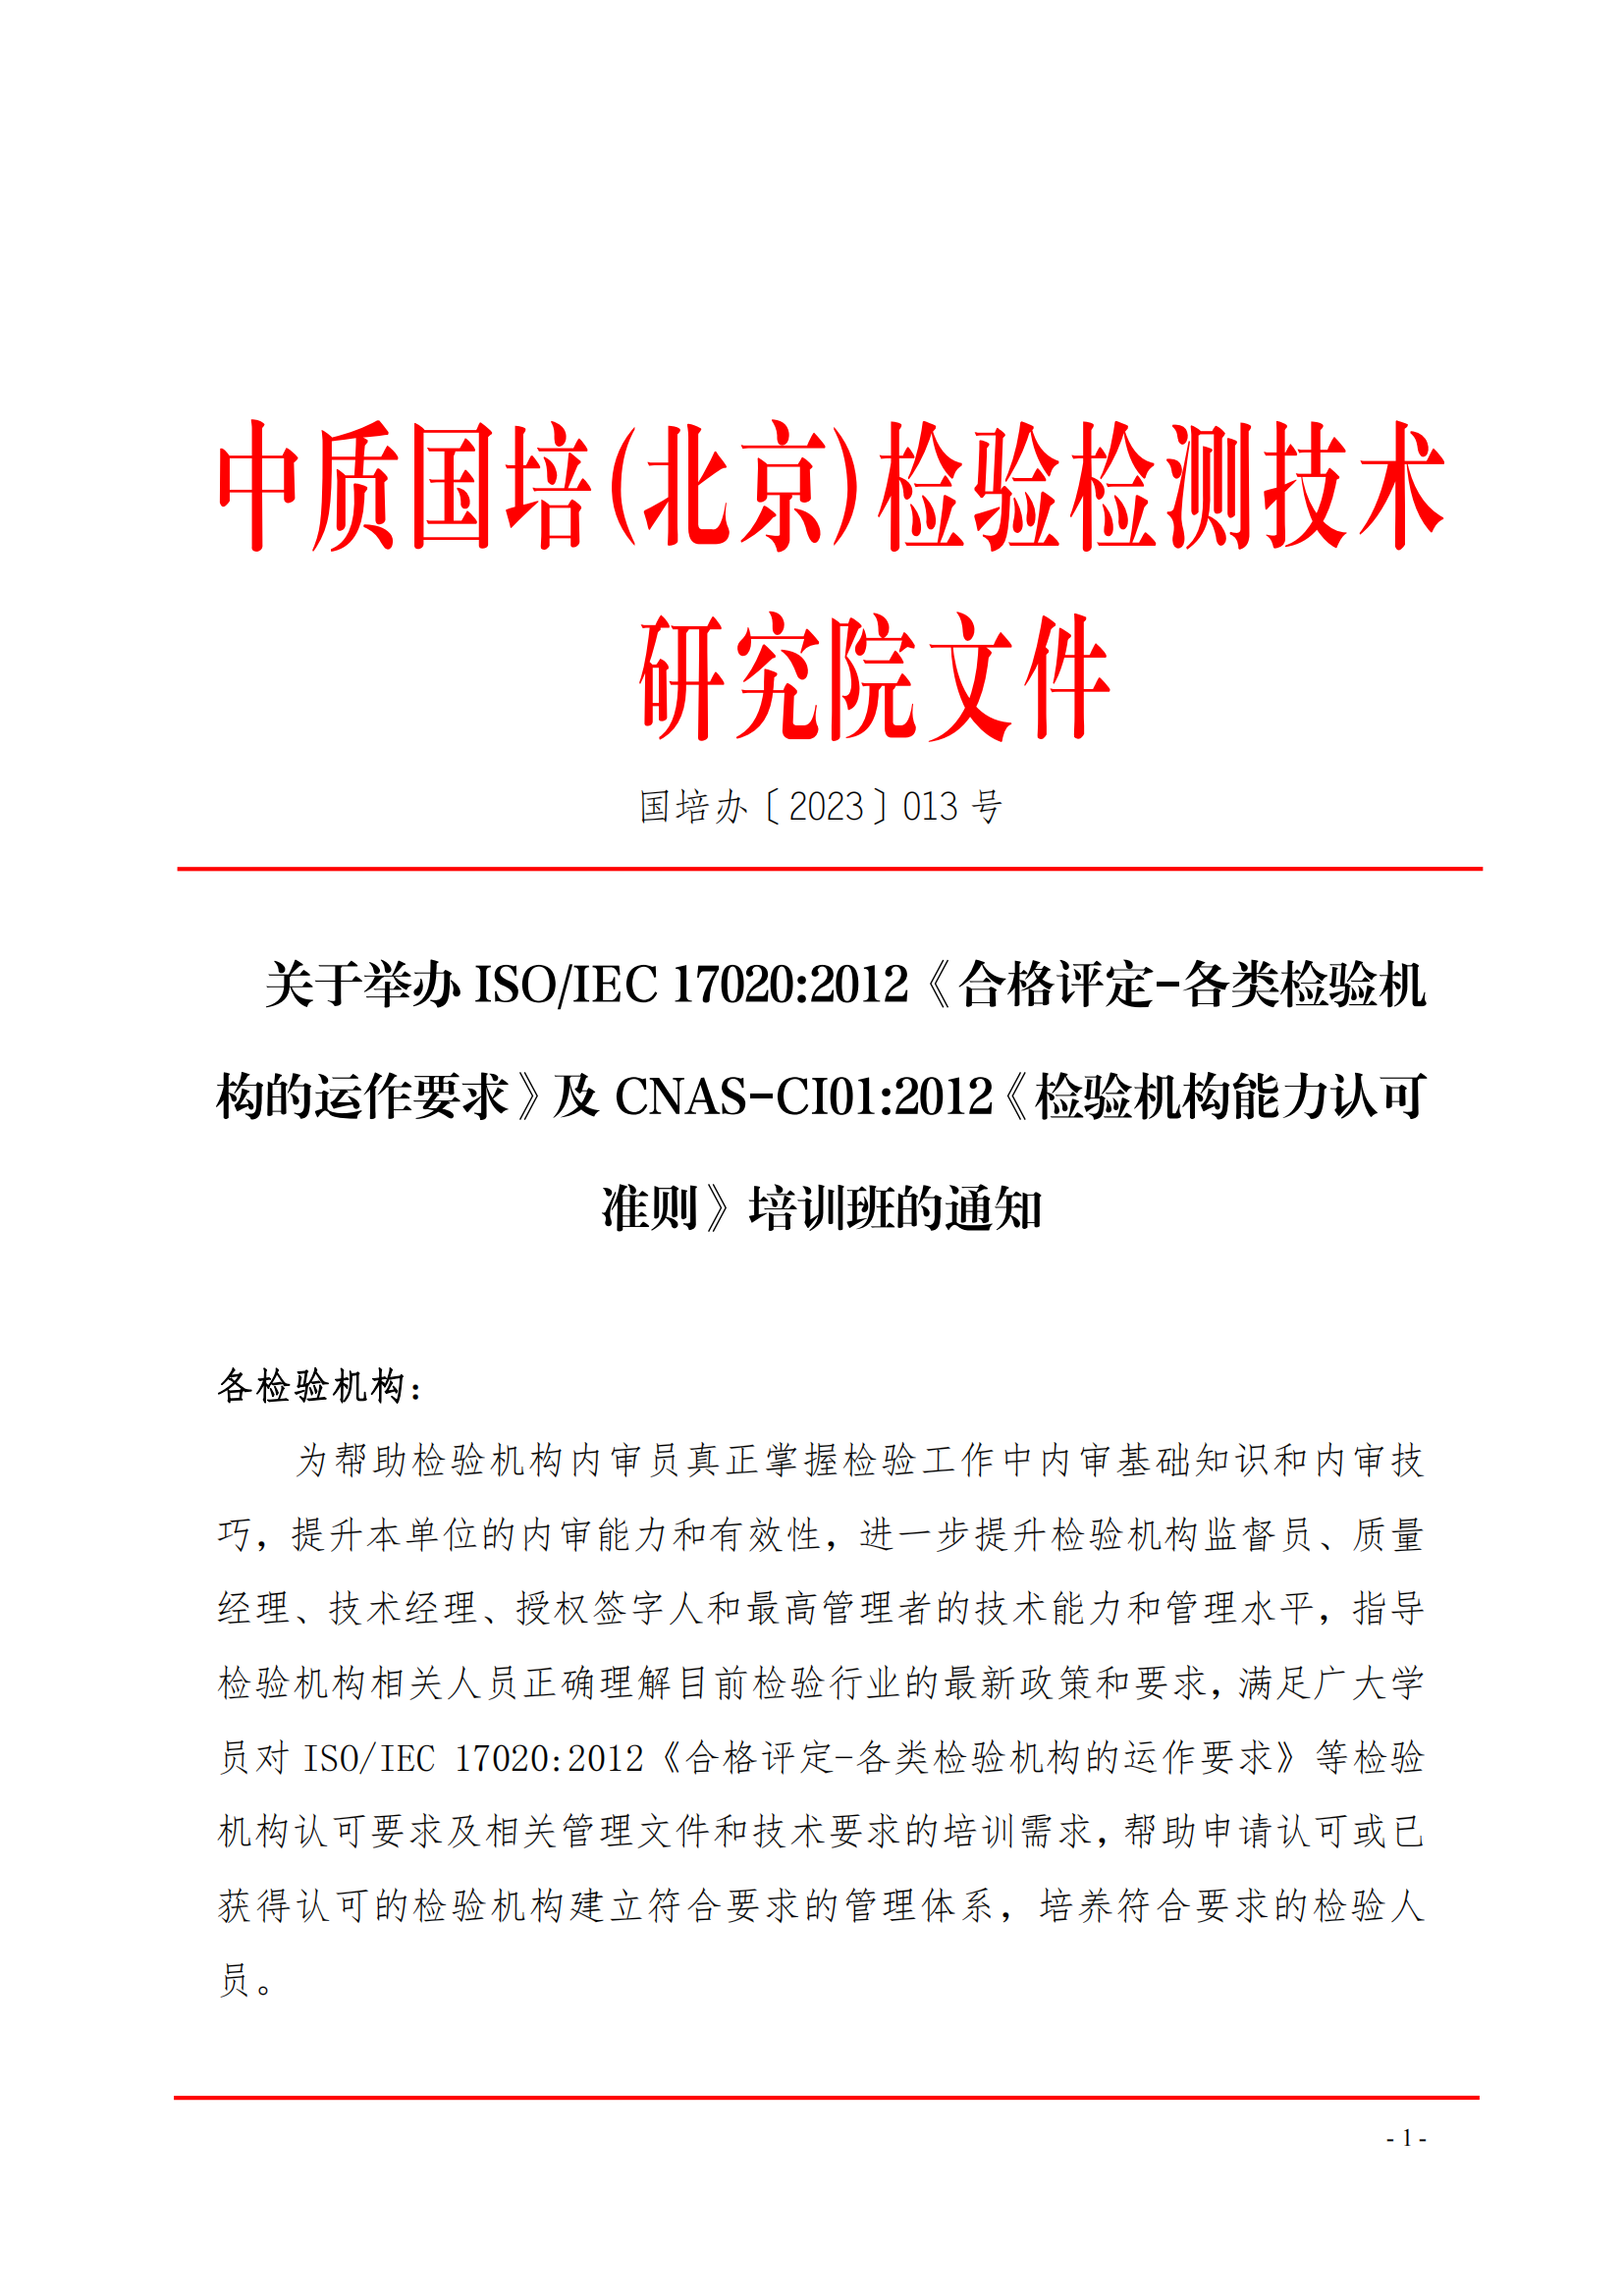 中质国培-关于举办ISOIEC 17020-2012《合格评定-各类检验机构的运作要求》_00.png